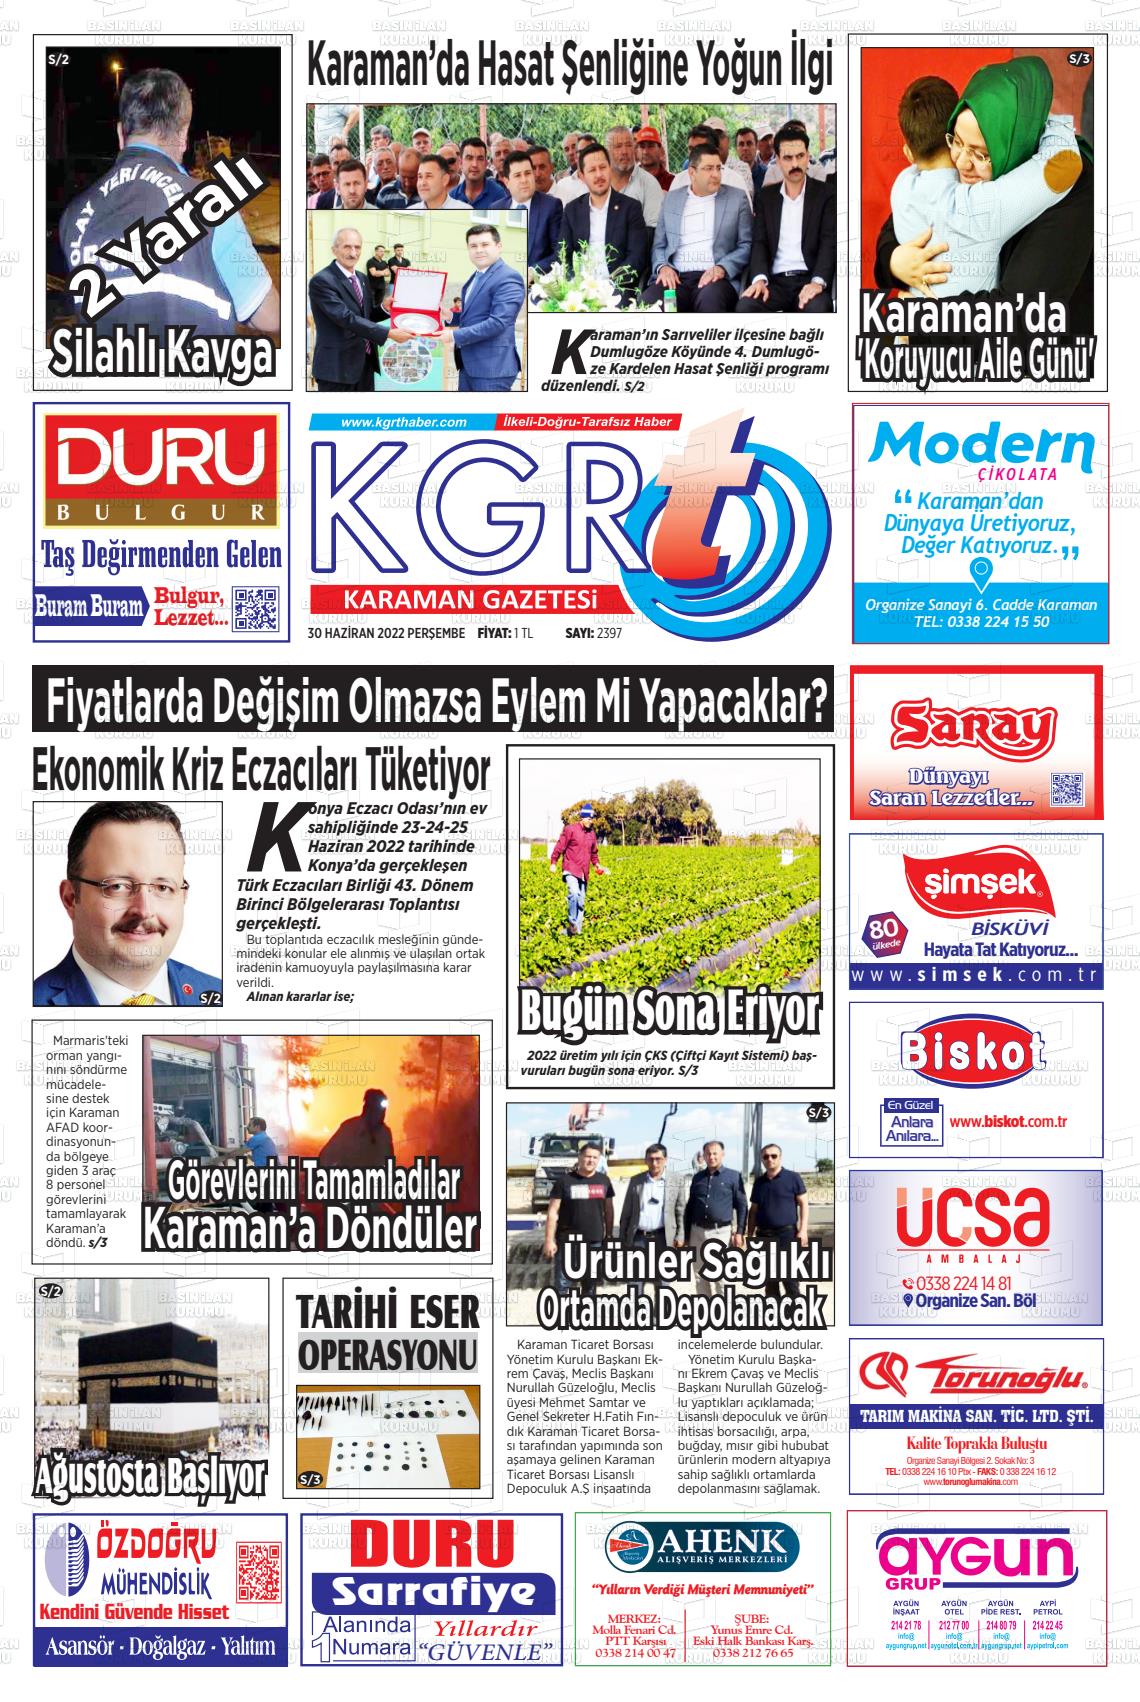 01 Temmuz 2022 Kgrt Karaman Gazete Manşeti